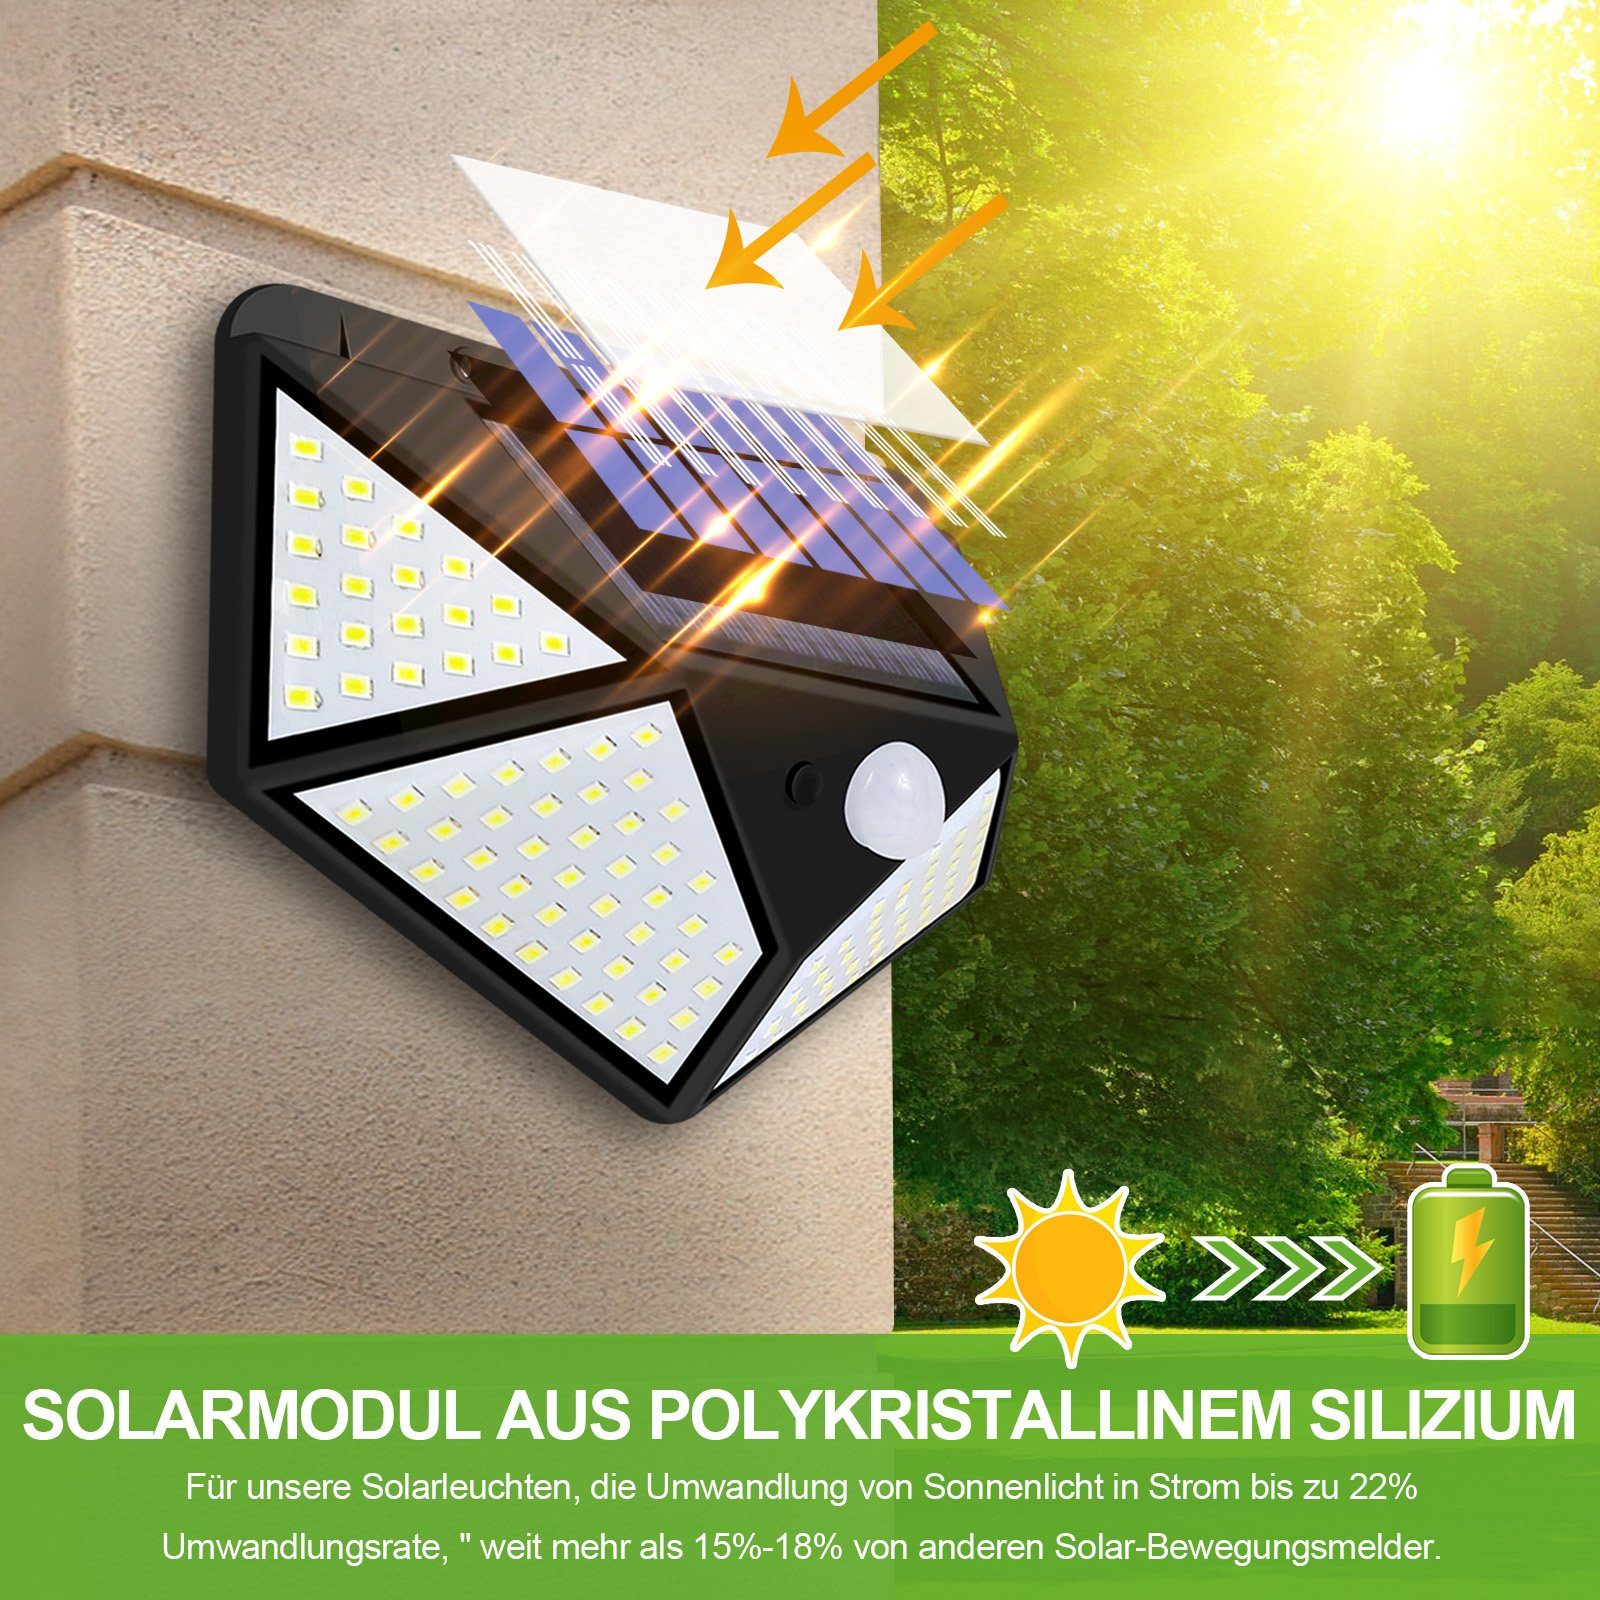 Sunicol LED Außen-Wandleuchte 128 LEDs Garten, Solarlampen,PIR-Bewegungssensor, Außenwandleuchte weitwinklige Ausleuchtung IP65 300° Tageslichtweiß, Wasserdicht